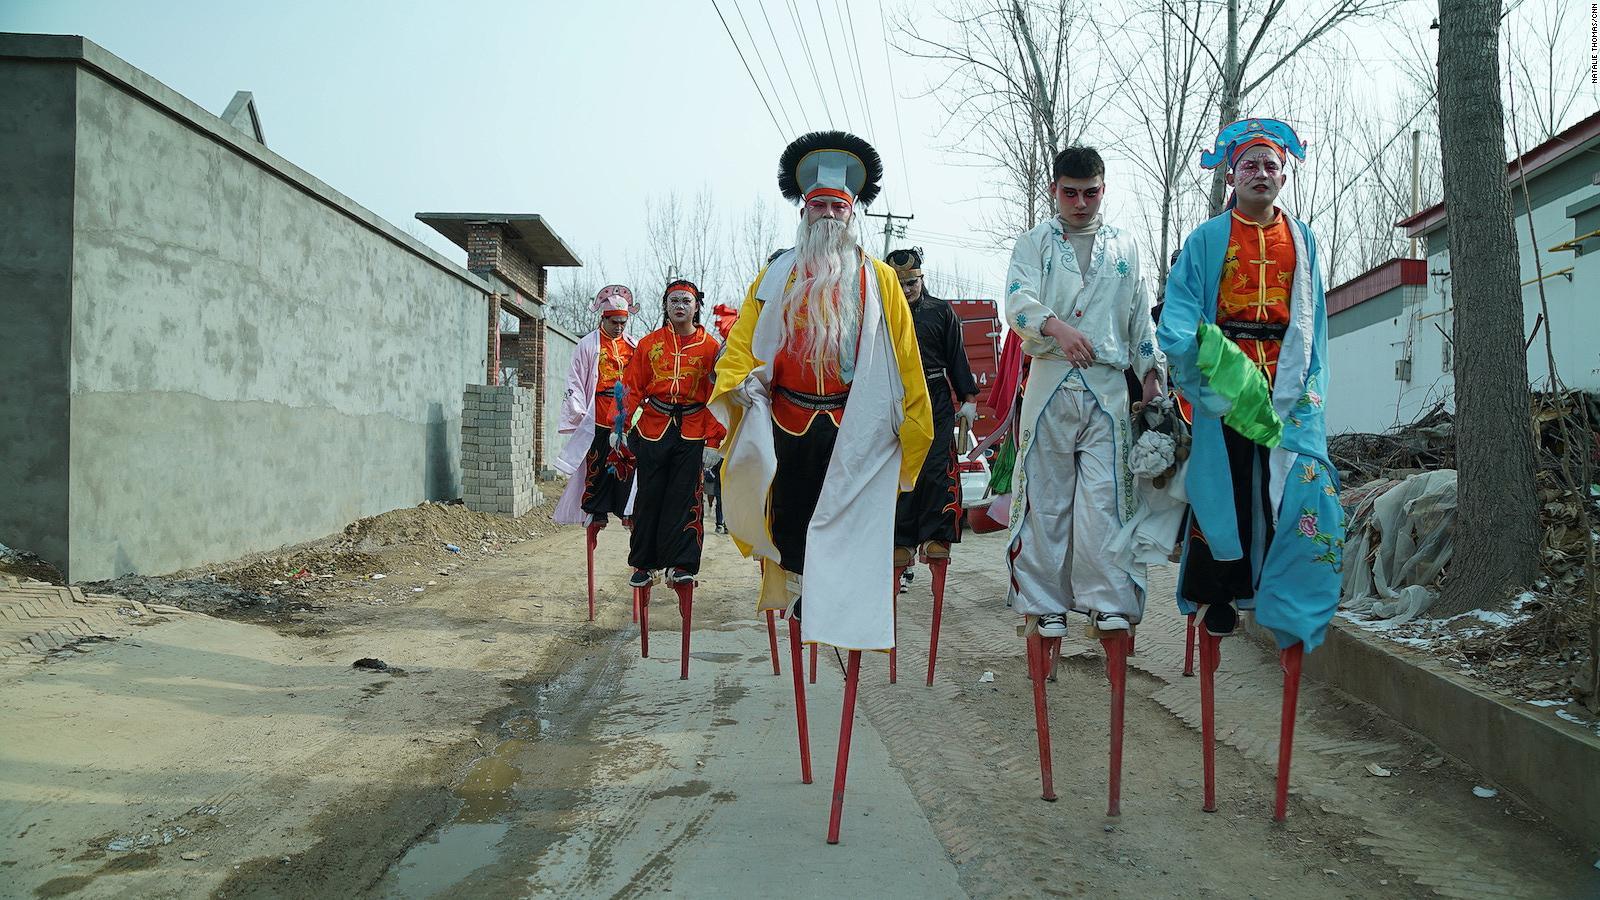 中国では竹馬乗りは幸運をもたらす存在と言われている。数百年にわたり新年の祝いや重要な冠婚葬祭など、重要な節目に立ち会ってきた/Natalie Thomas/CNN